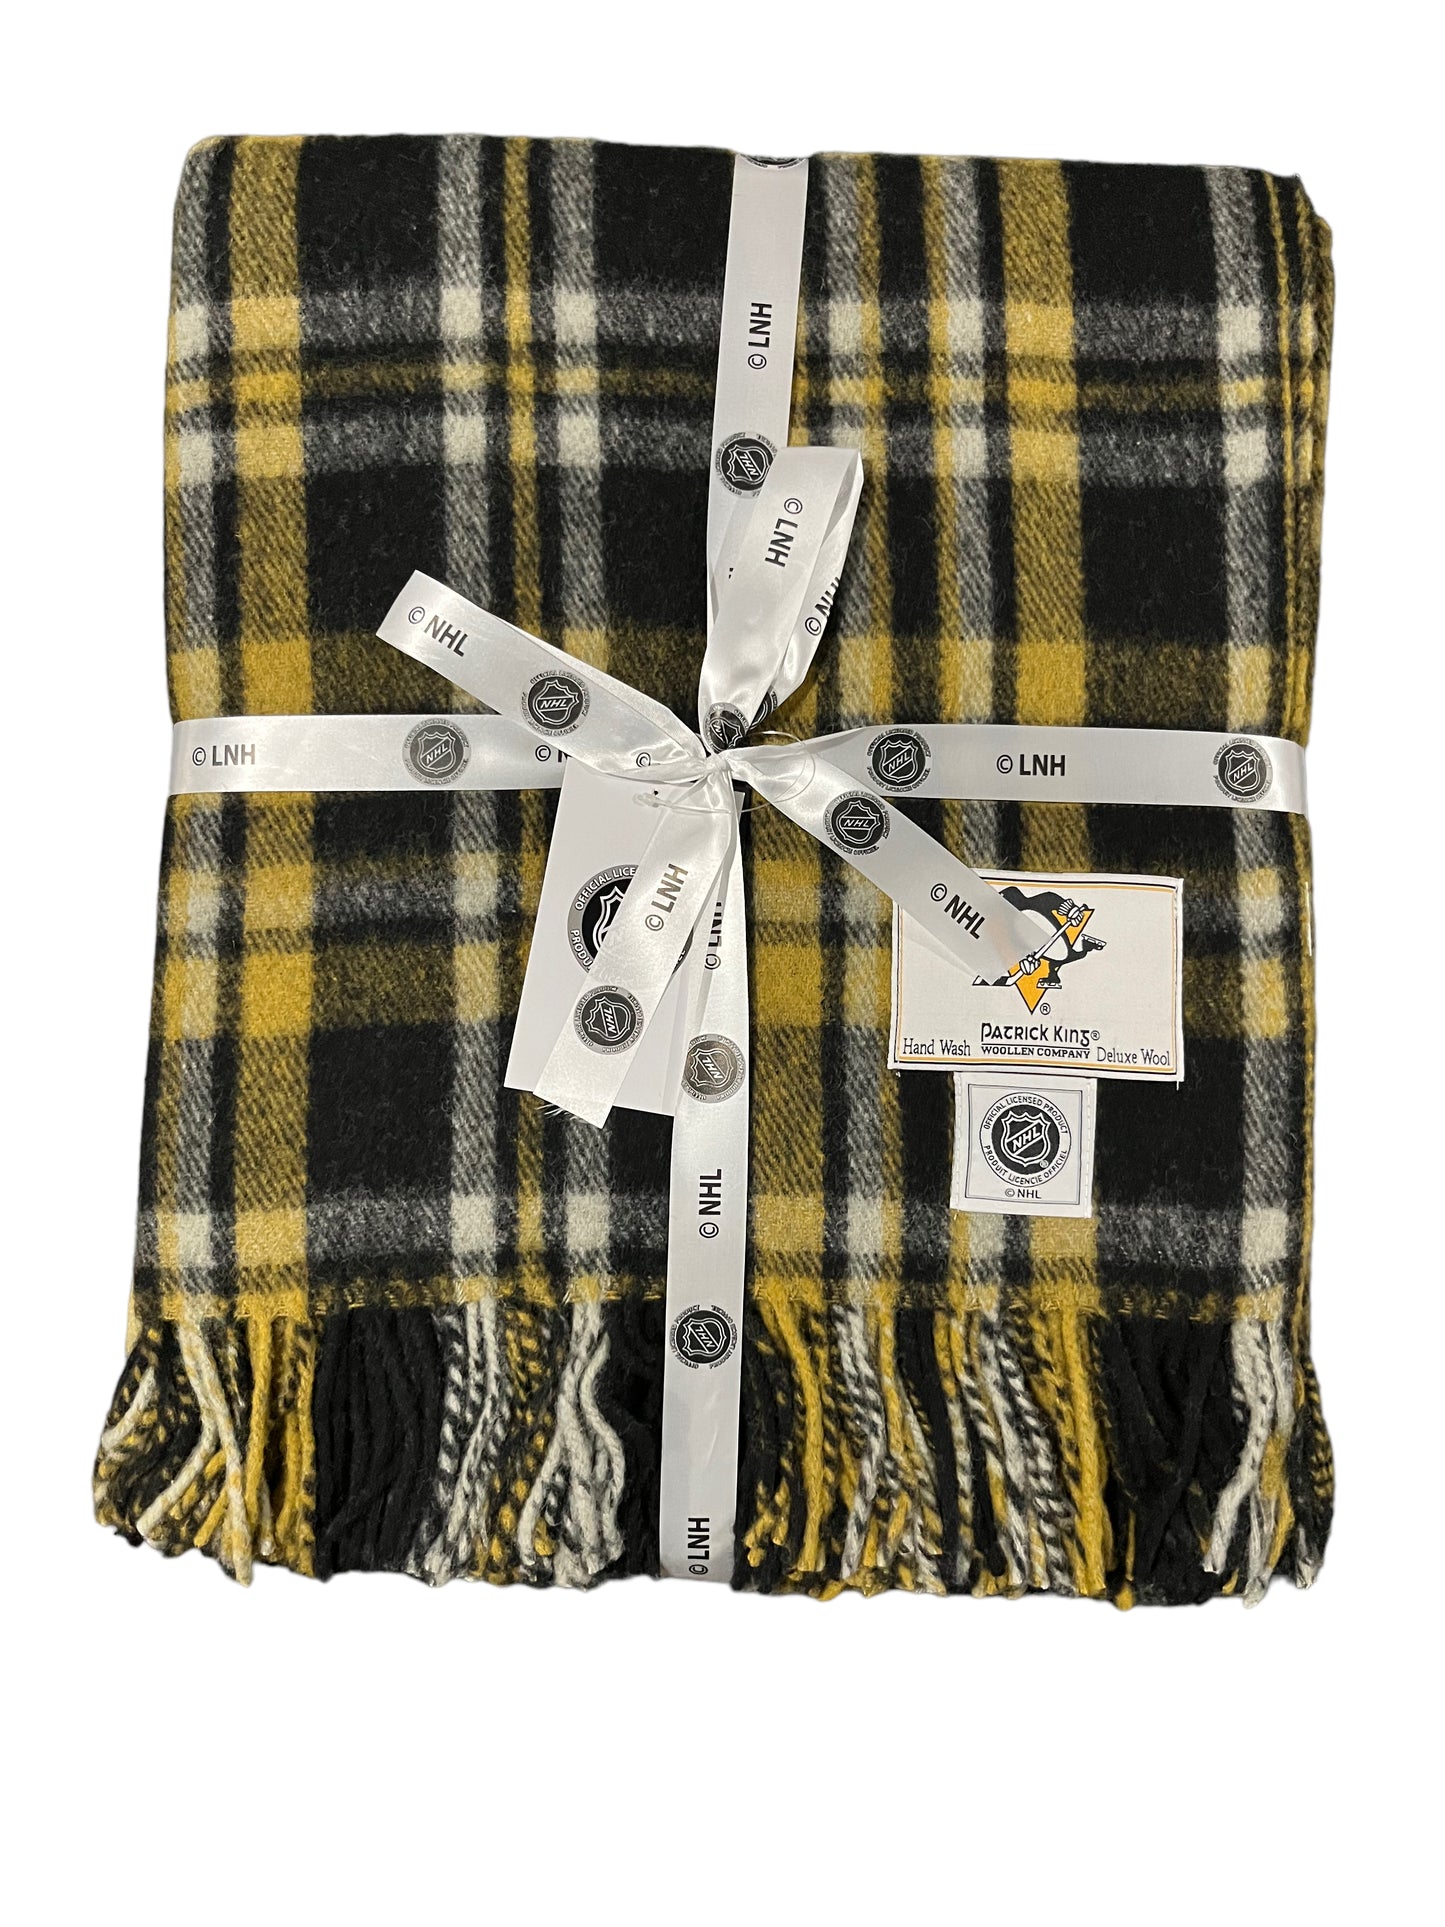 Pittsburgh Penguins Wool Blanket